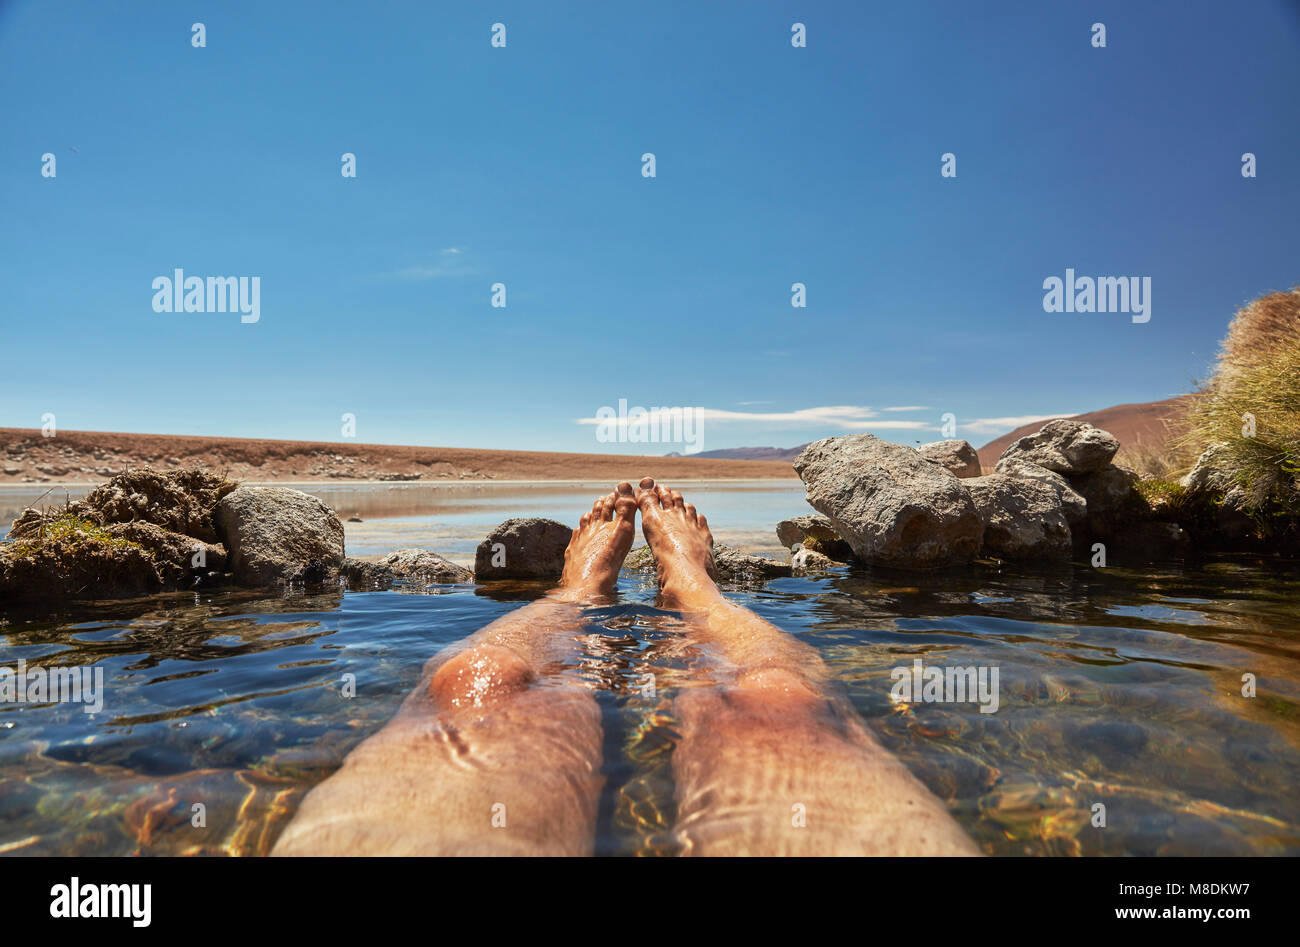 Man relaxing in water pool, low section, Salar de Chiguana, Chiguana, Potosi, Bolivia, South America Stock Photo